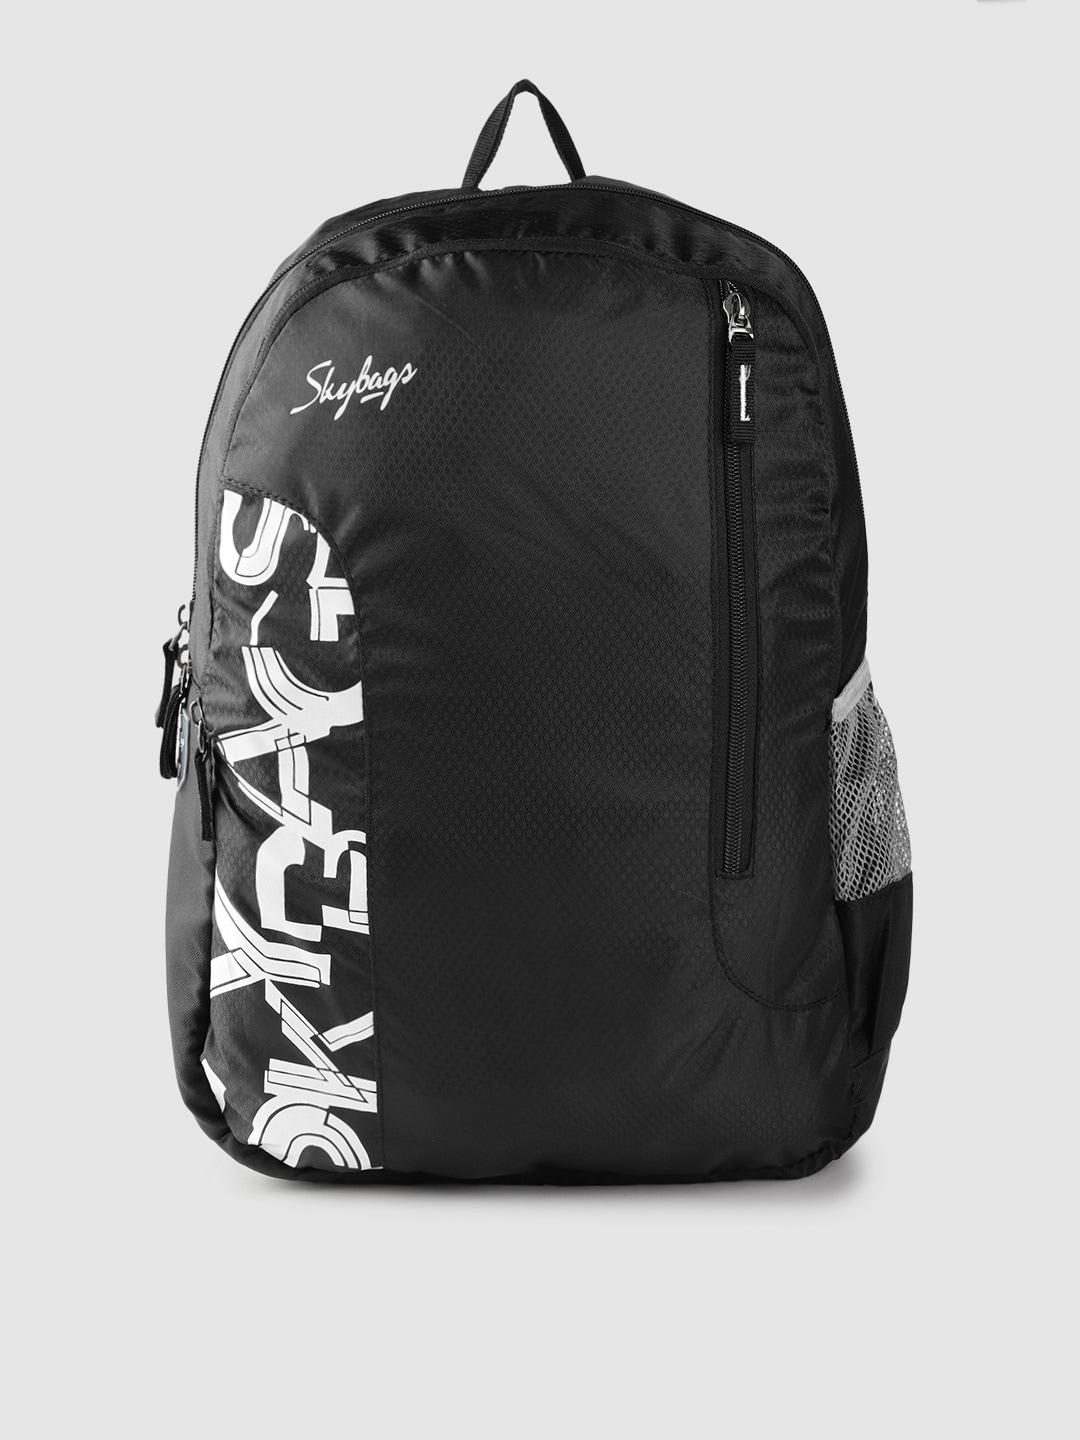 skybags-unisex-black-&-white-brand-logo-print-backpack--21.3-ltrs